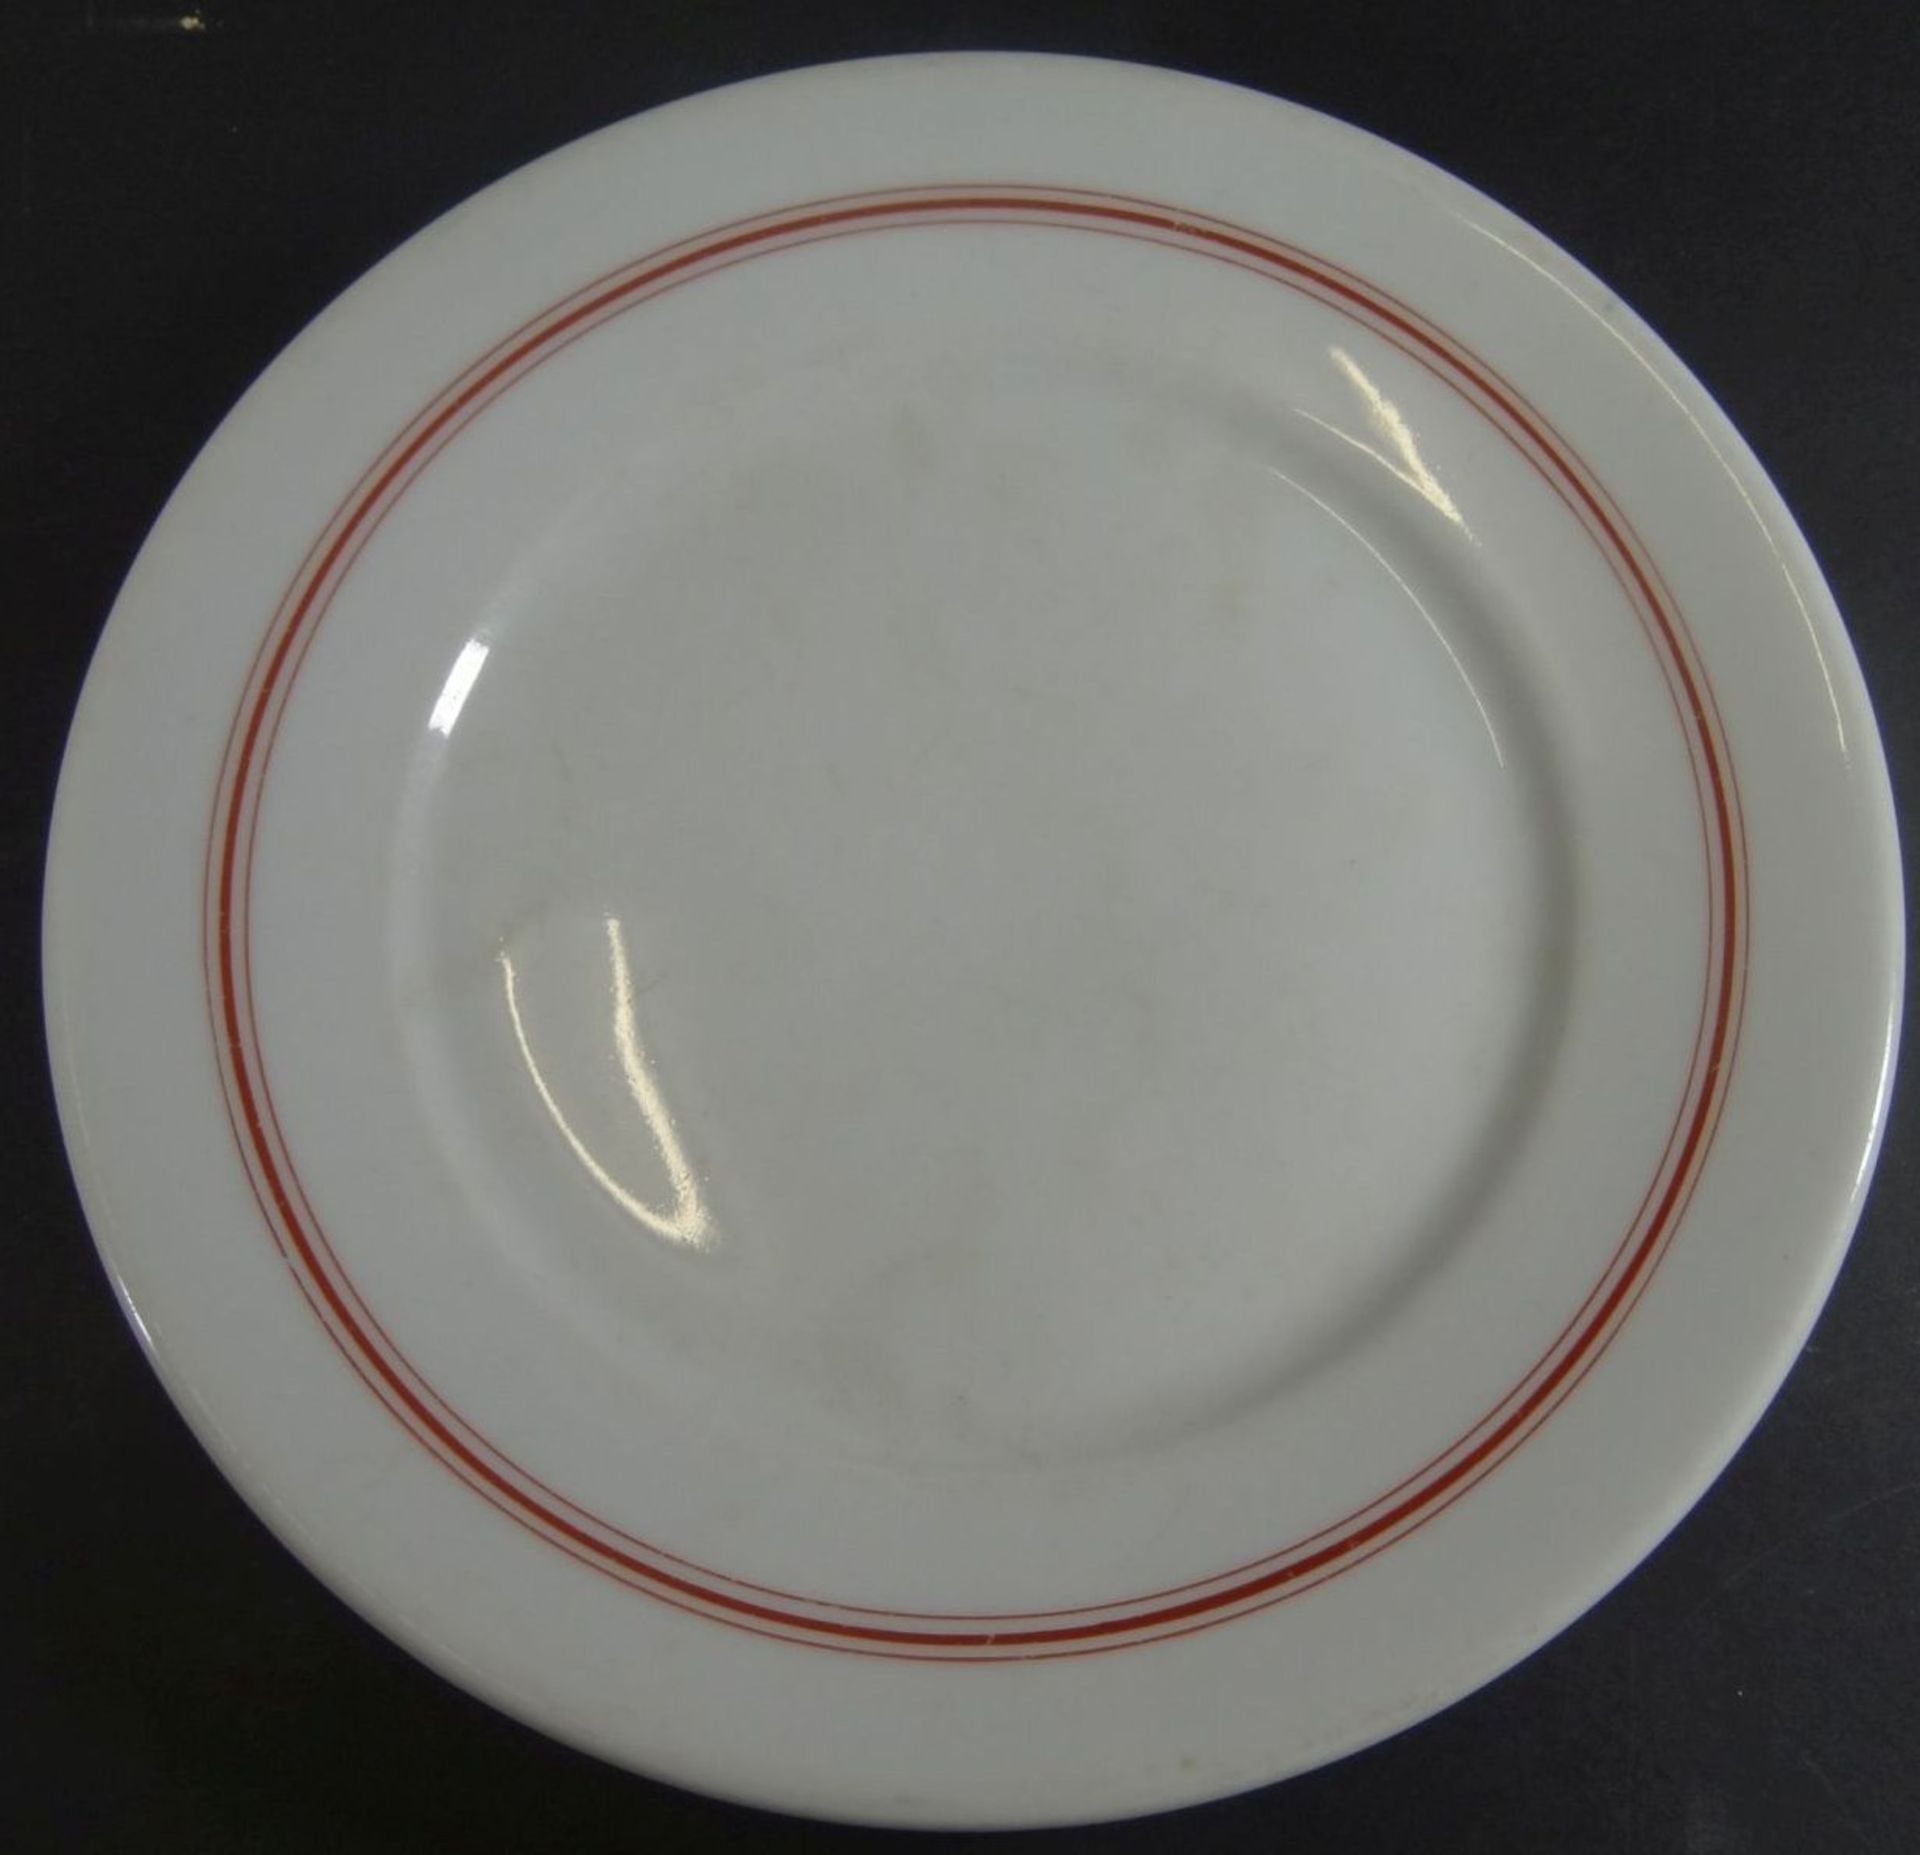 ovale Platte und kl. Teller, Marinegschirr, KPM, dat. 1940/42, roter Rand, 40x25 cm und D-20 cm - Bild 2 aus 5